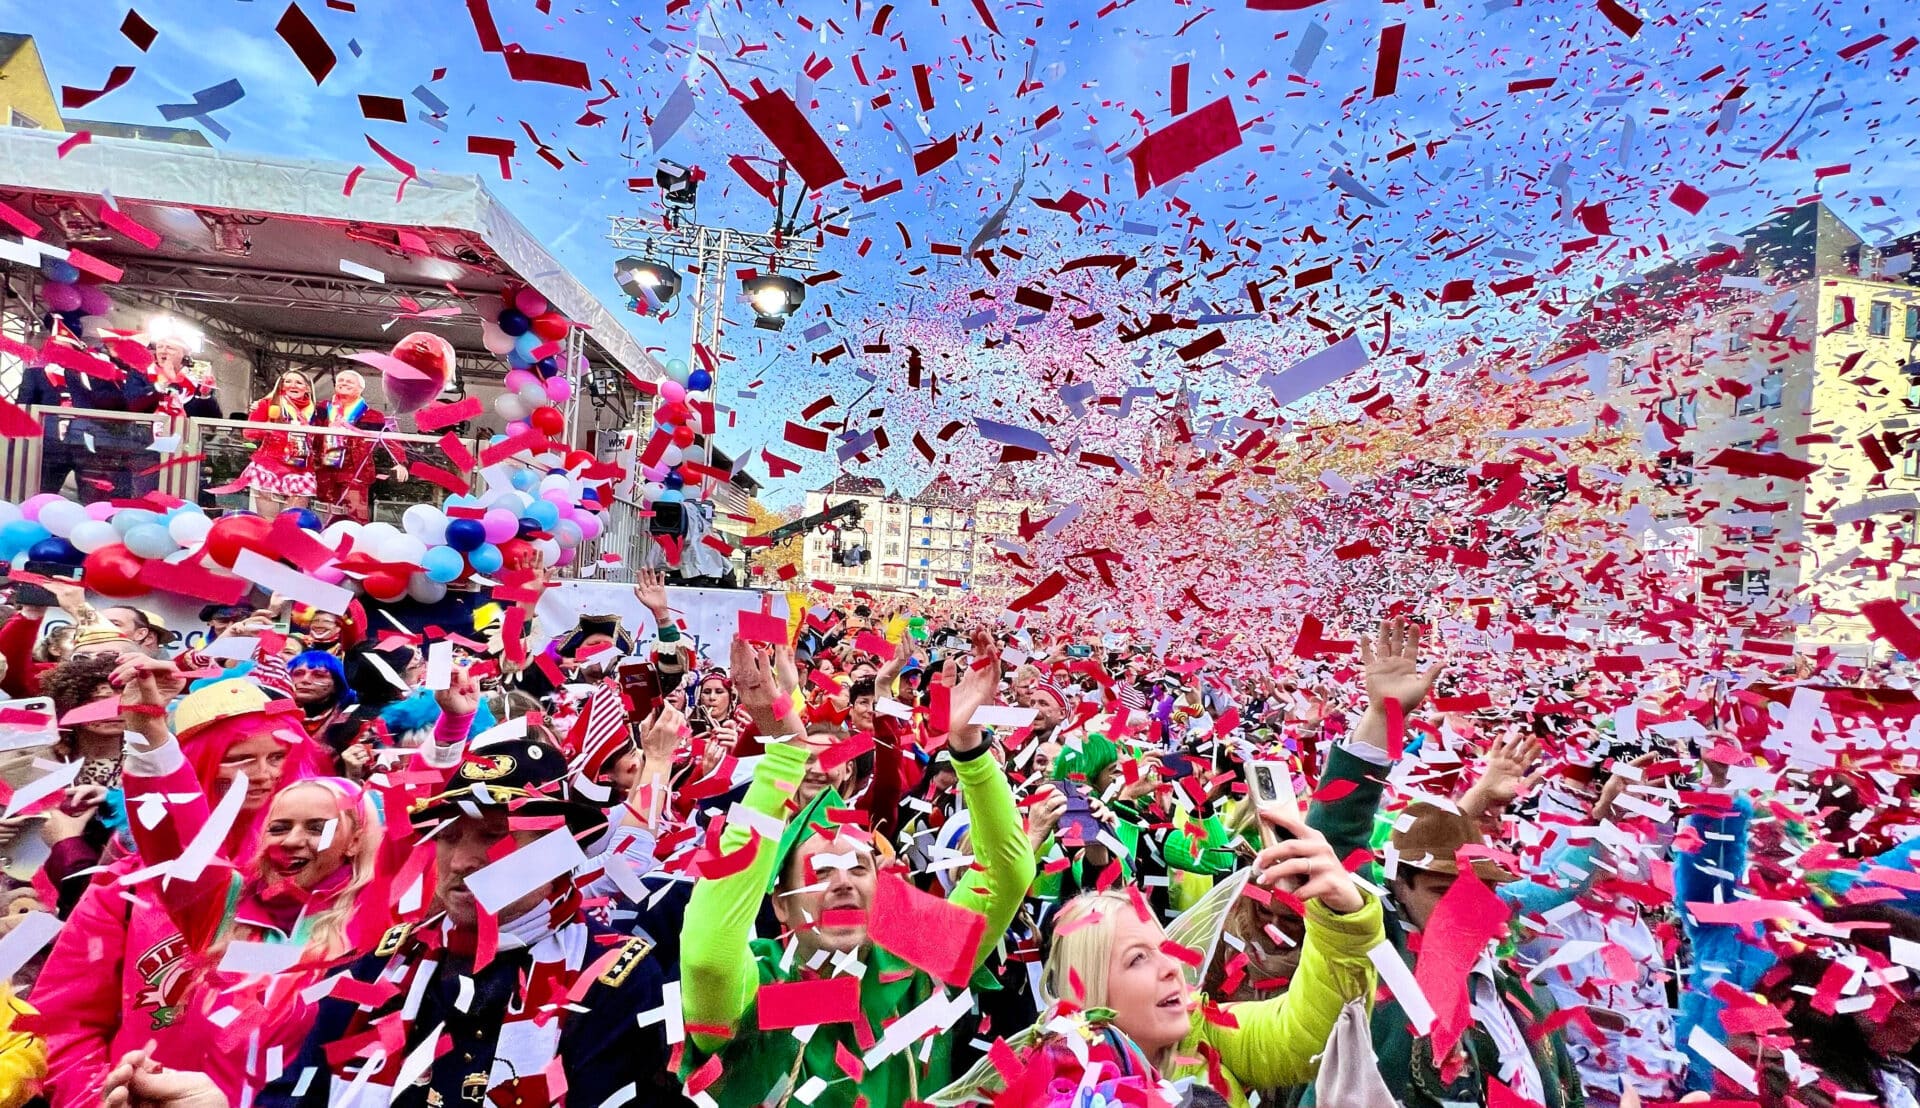 Das Foto zeigt feiernde Jecken im Karneval, die im Konfettiregen stehen.